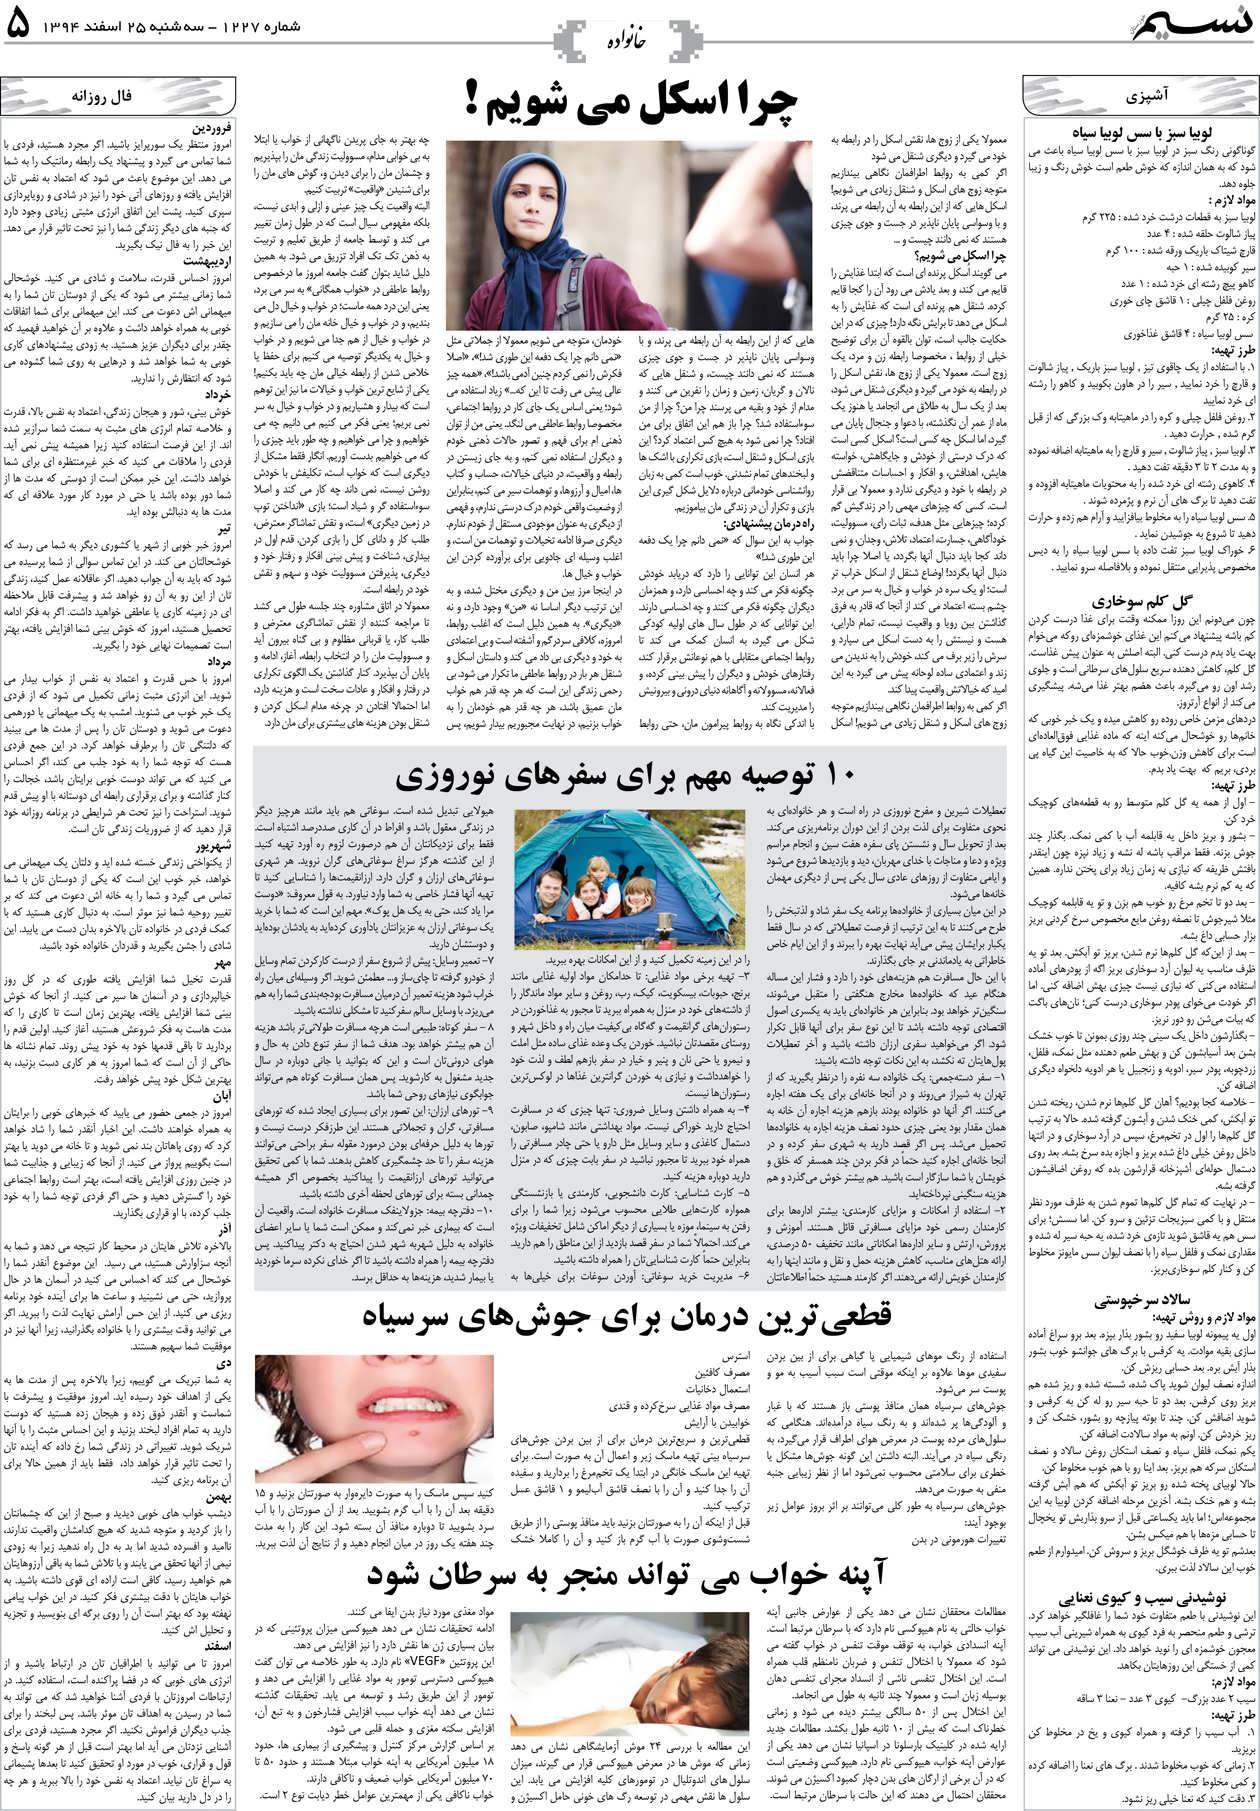 صفحه خانواده روزنامه نسیم شماره 1227